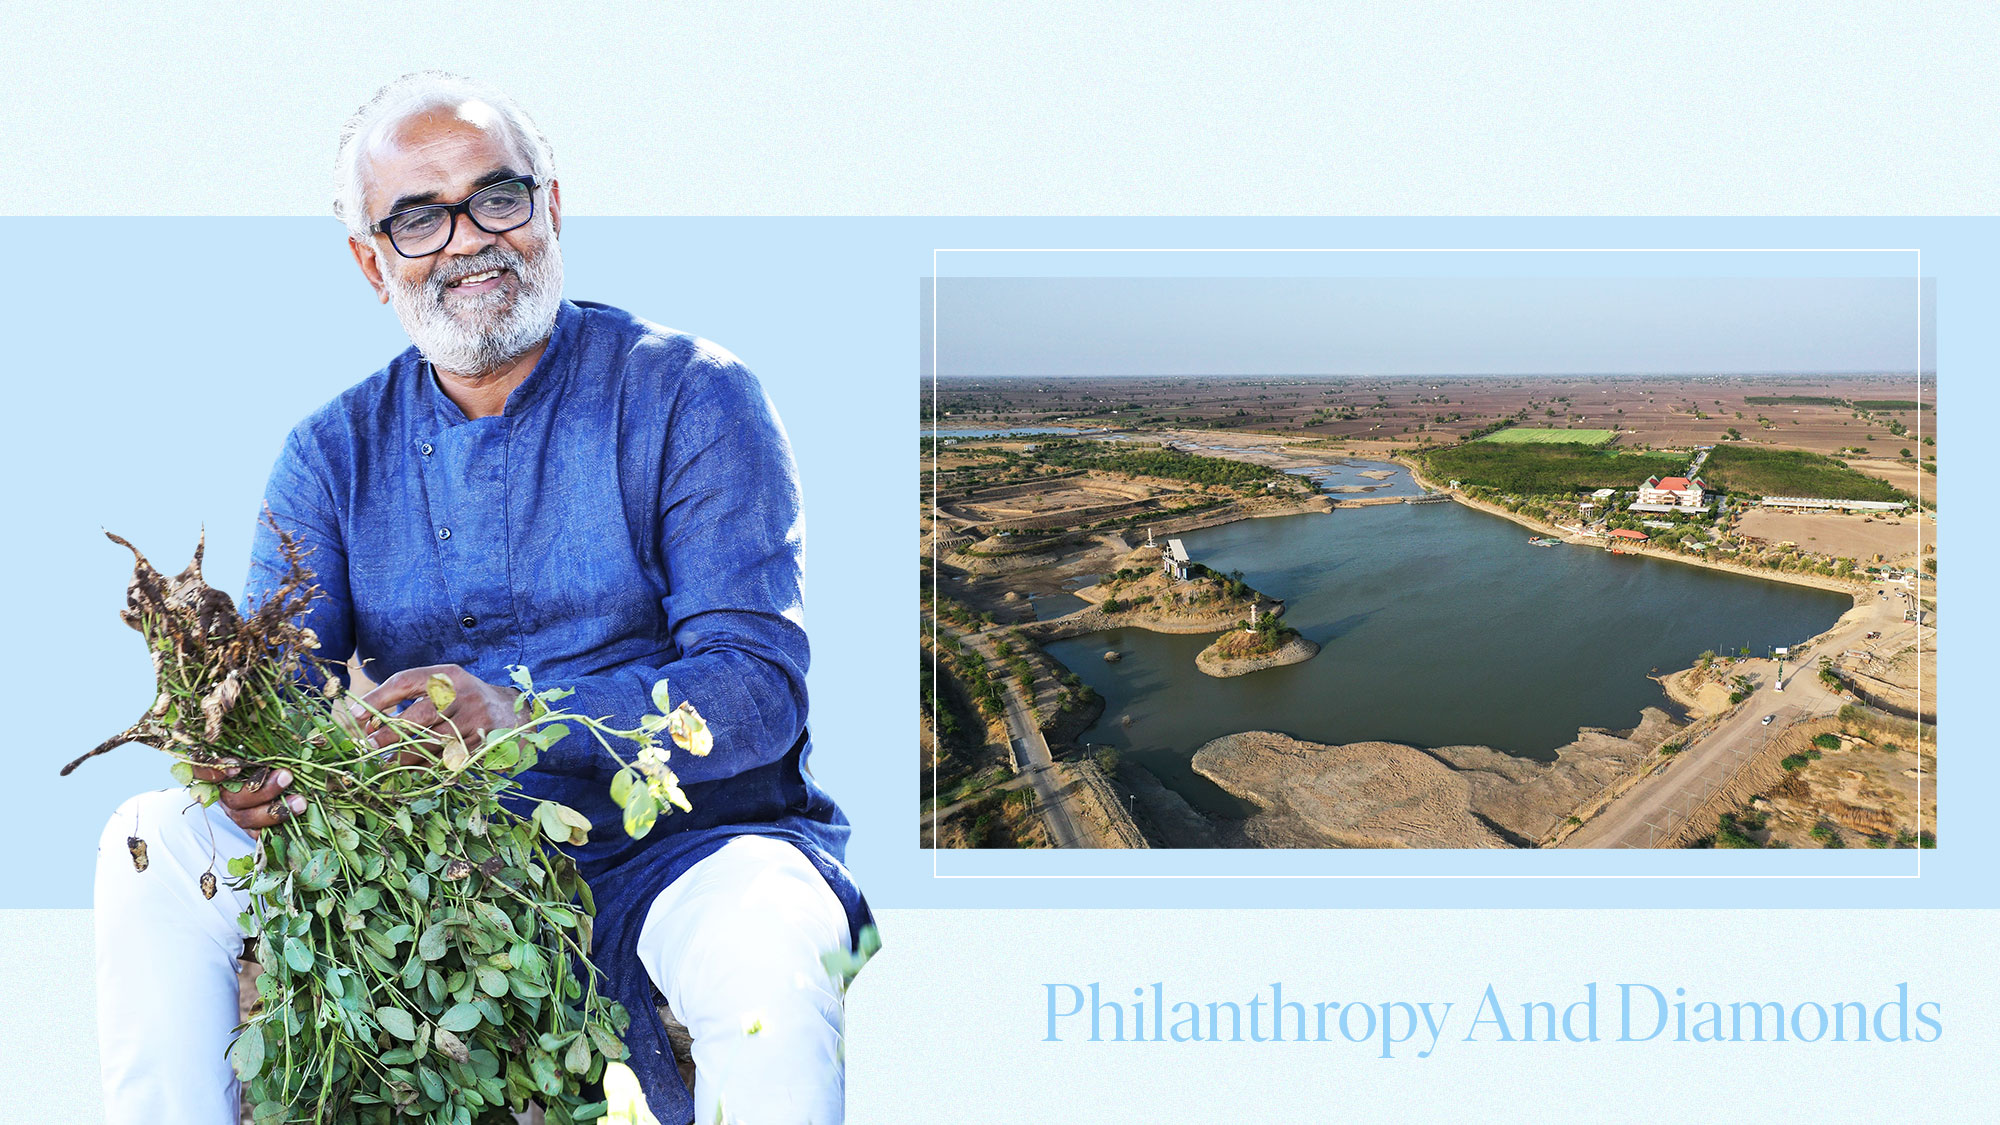 Padma Shri awardee Savji Dholakia on Philanthropy and Diamonds